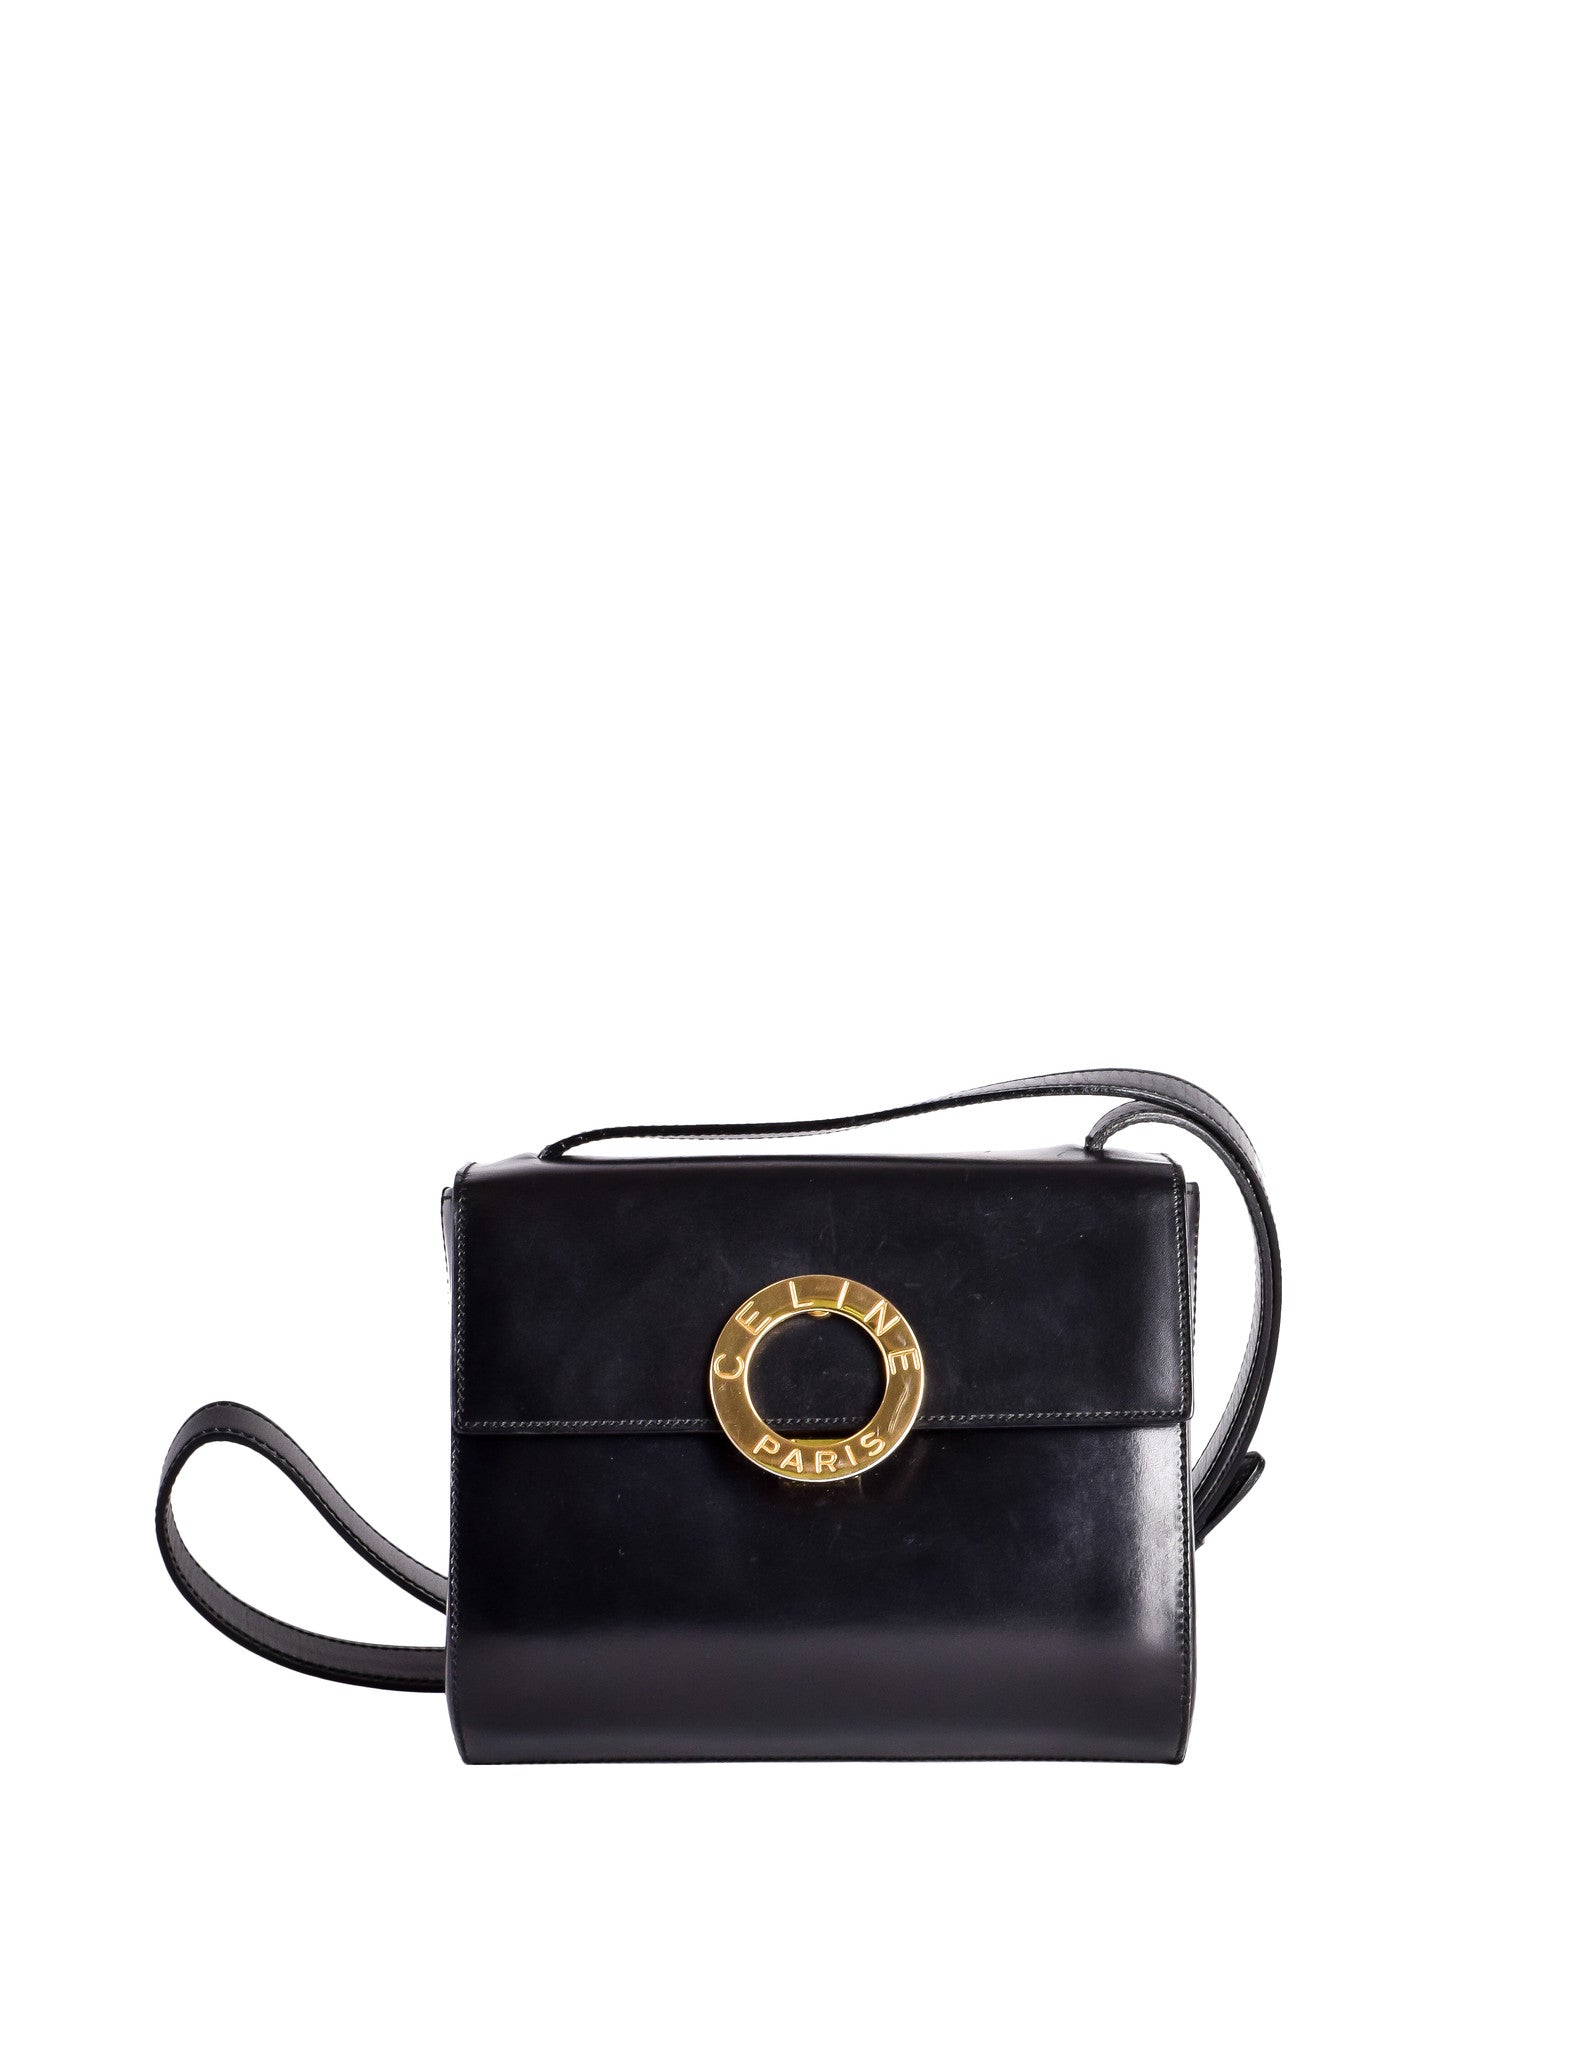 Celine Vintage Gold Circle Black Leather Structured Shoulder Bag - from Amarcord Vintage Fashion